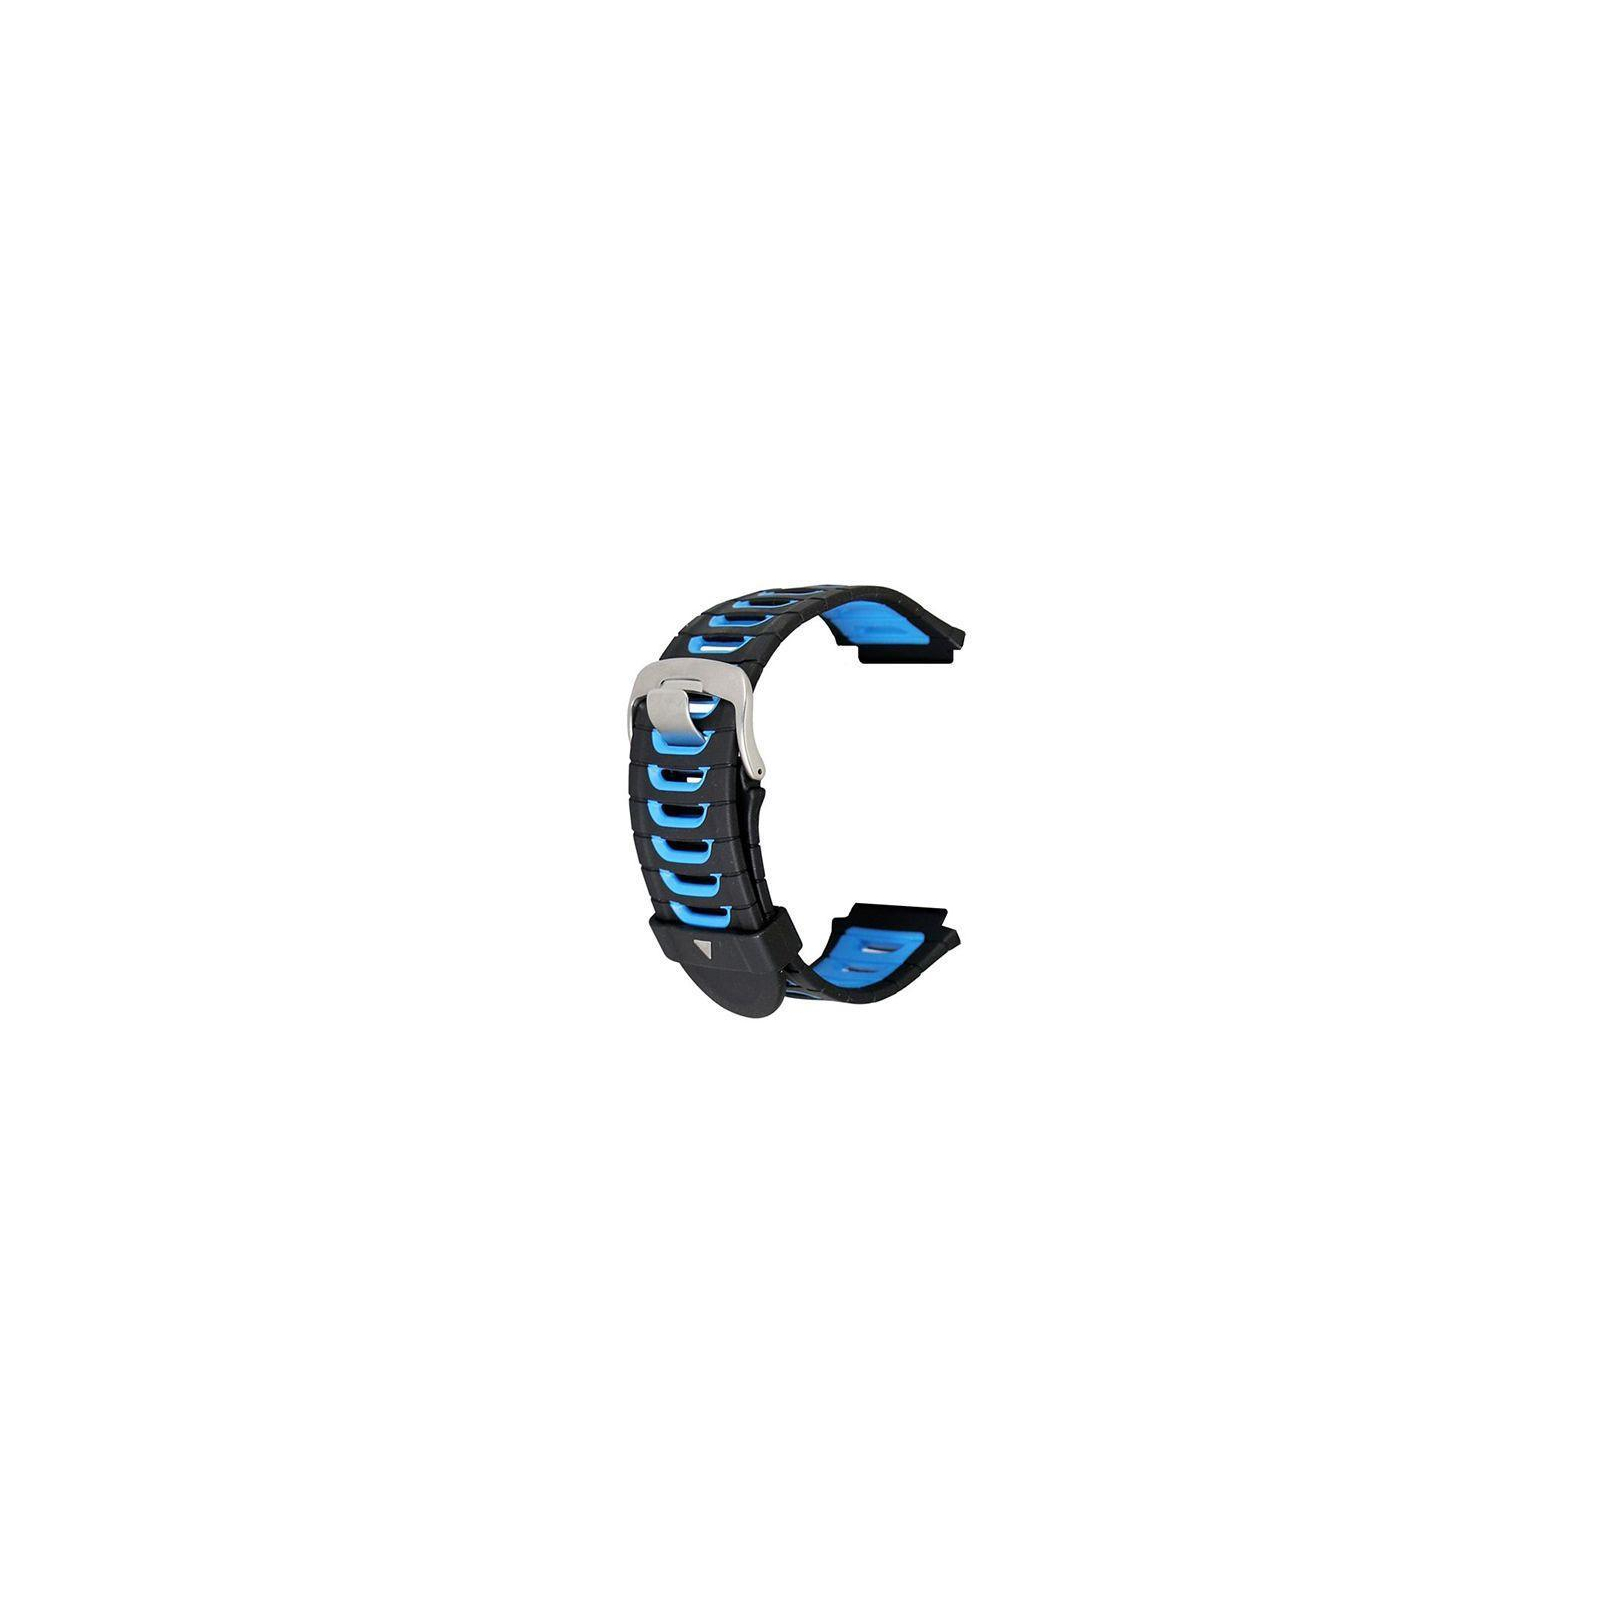 Ремешок для смарт-часов Garmin Replacement Band, Forerunner 920XT, Blk/Blue (010-11251-41) изображение 4